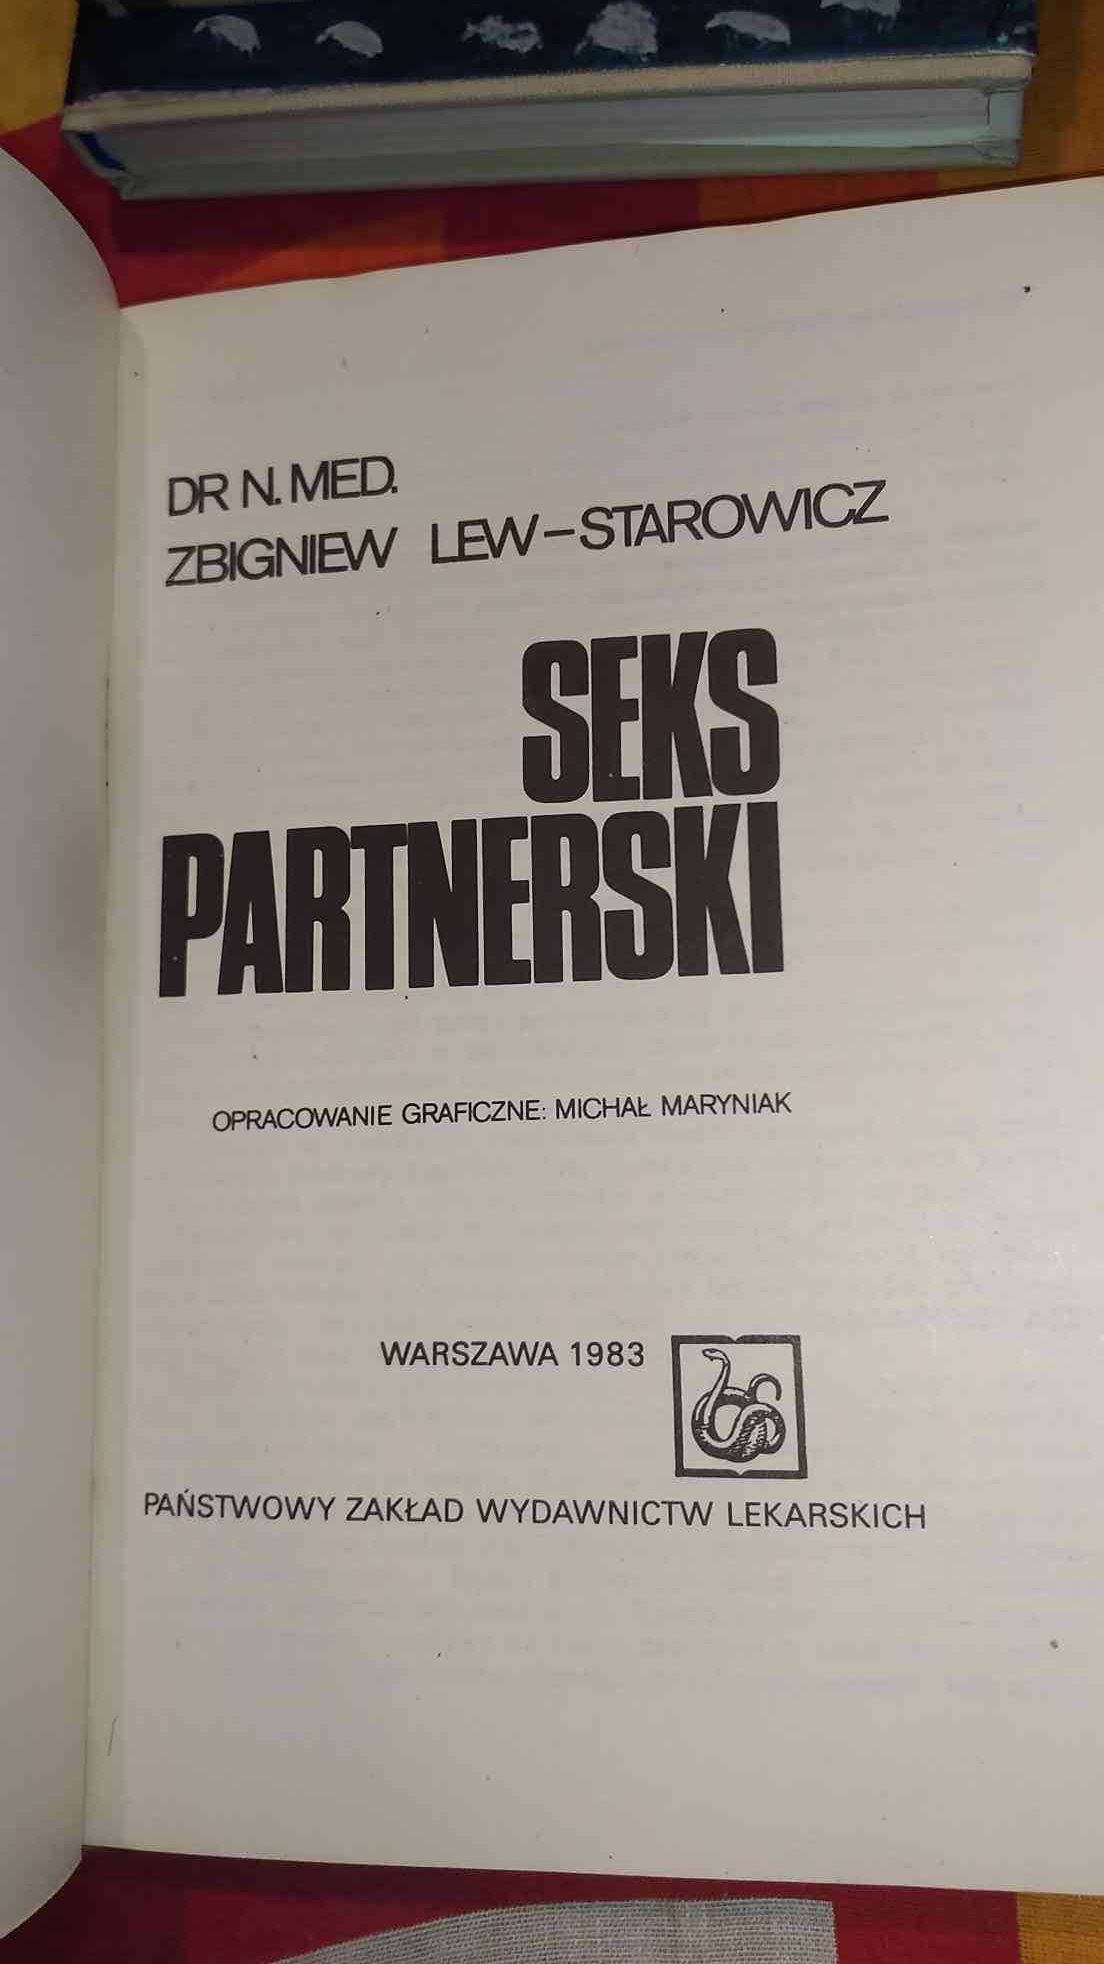 Seks Partnerski
Zbigniew Lew-starowicz
Pzwl